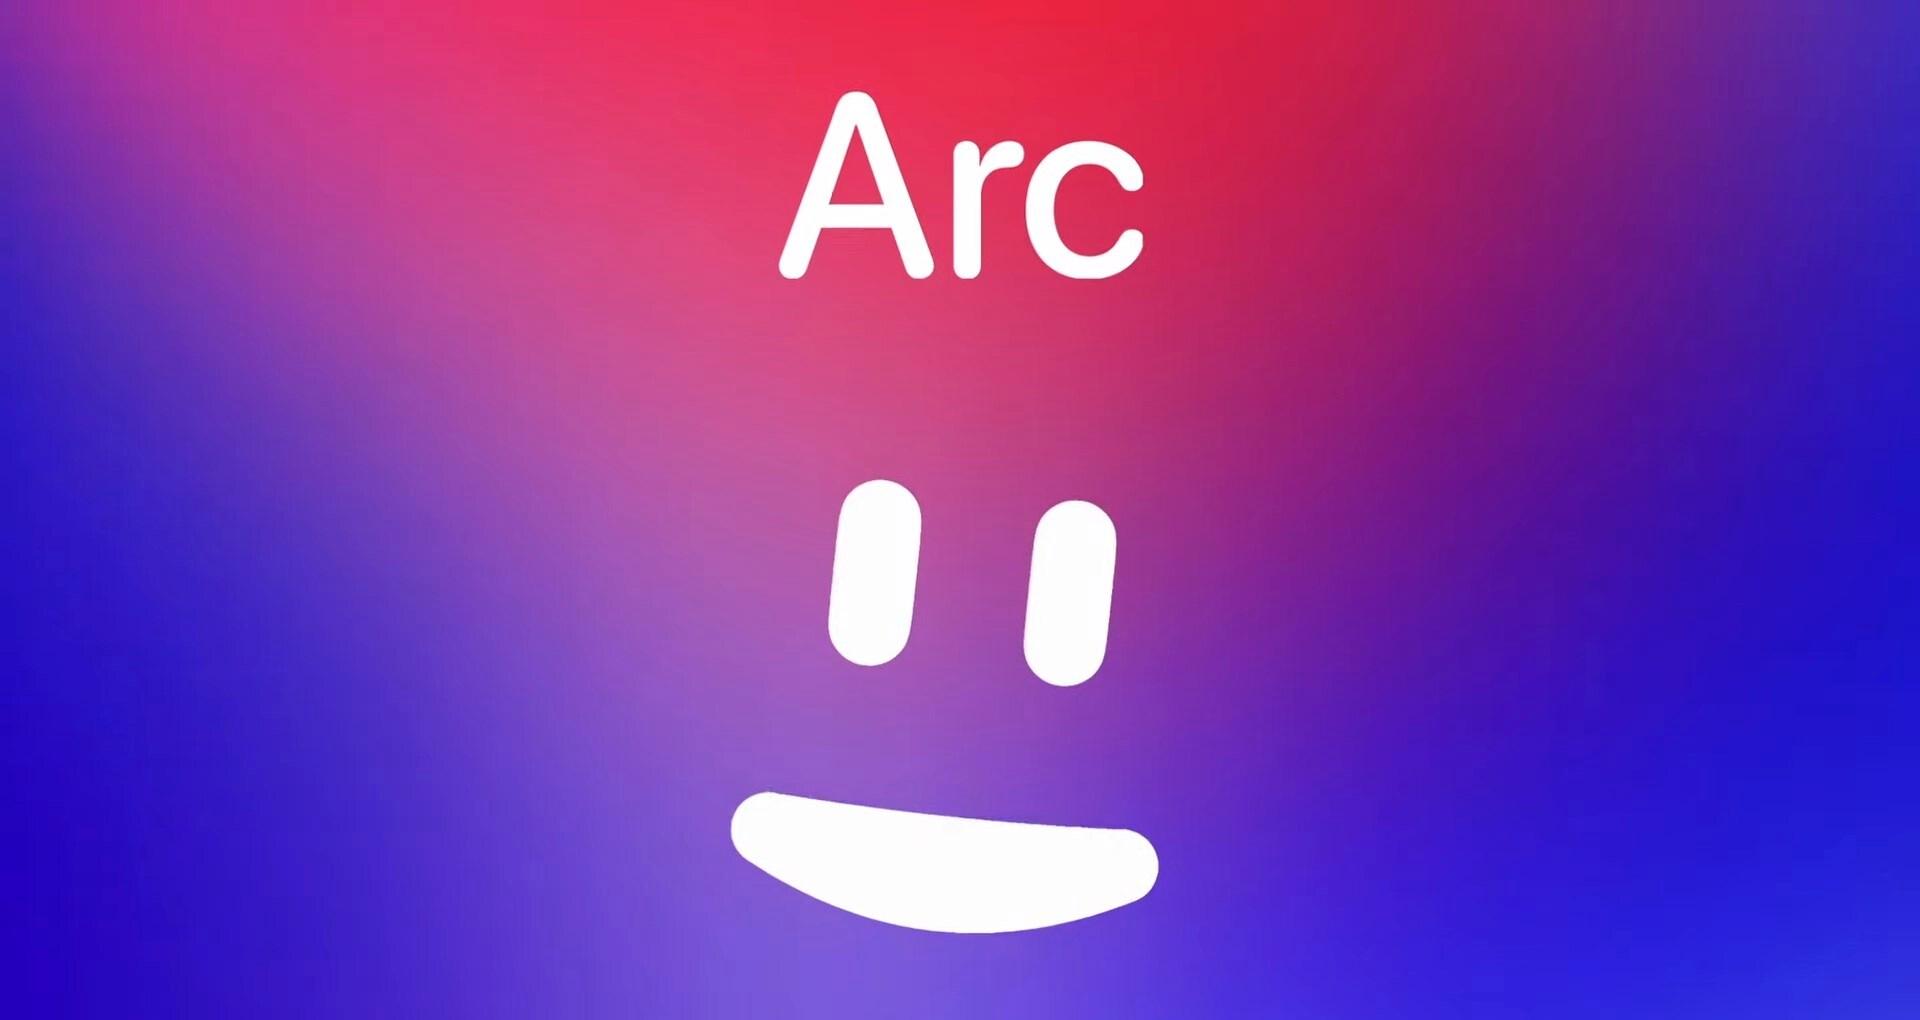 Arc Search tarayıcıda arama yapmak için ‘telefon görüşmesi’ yapılacak